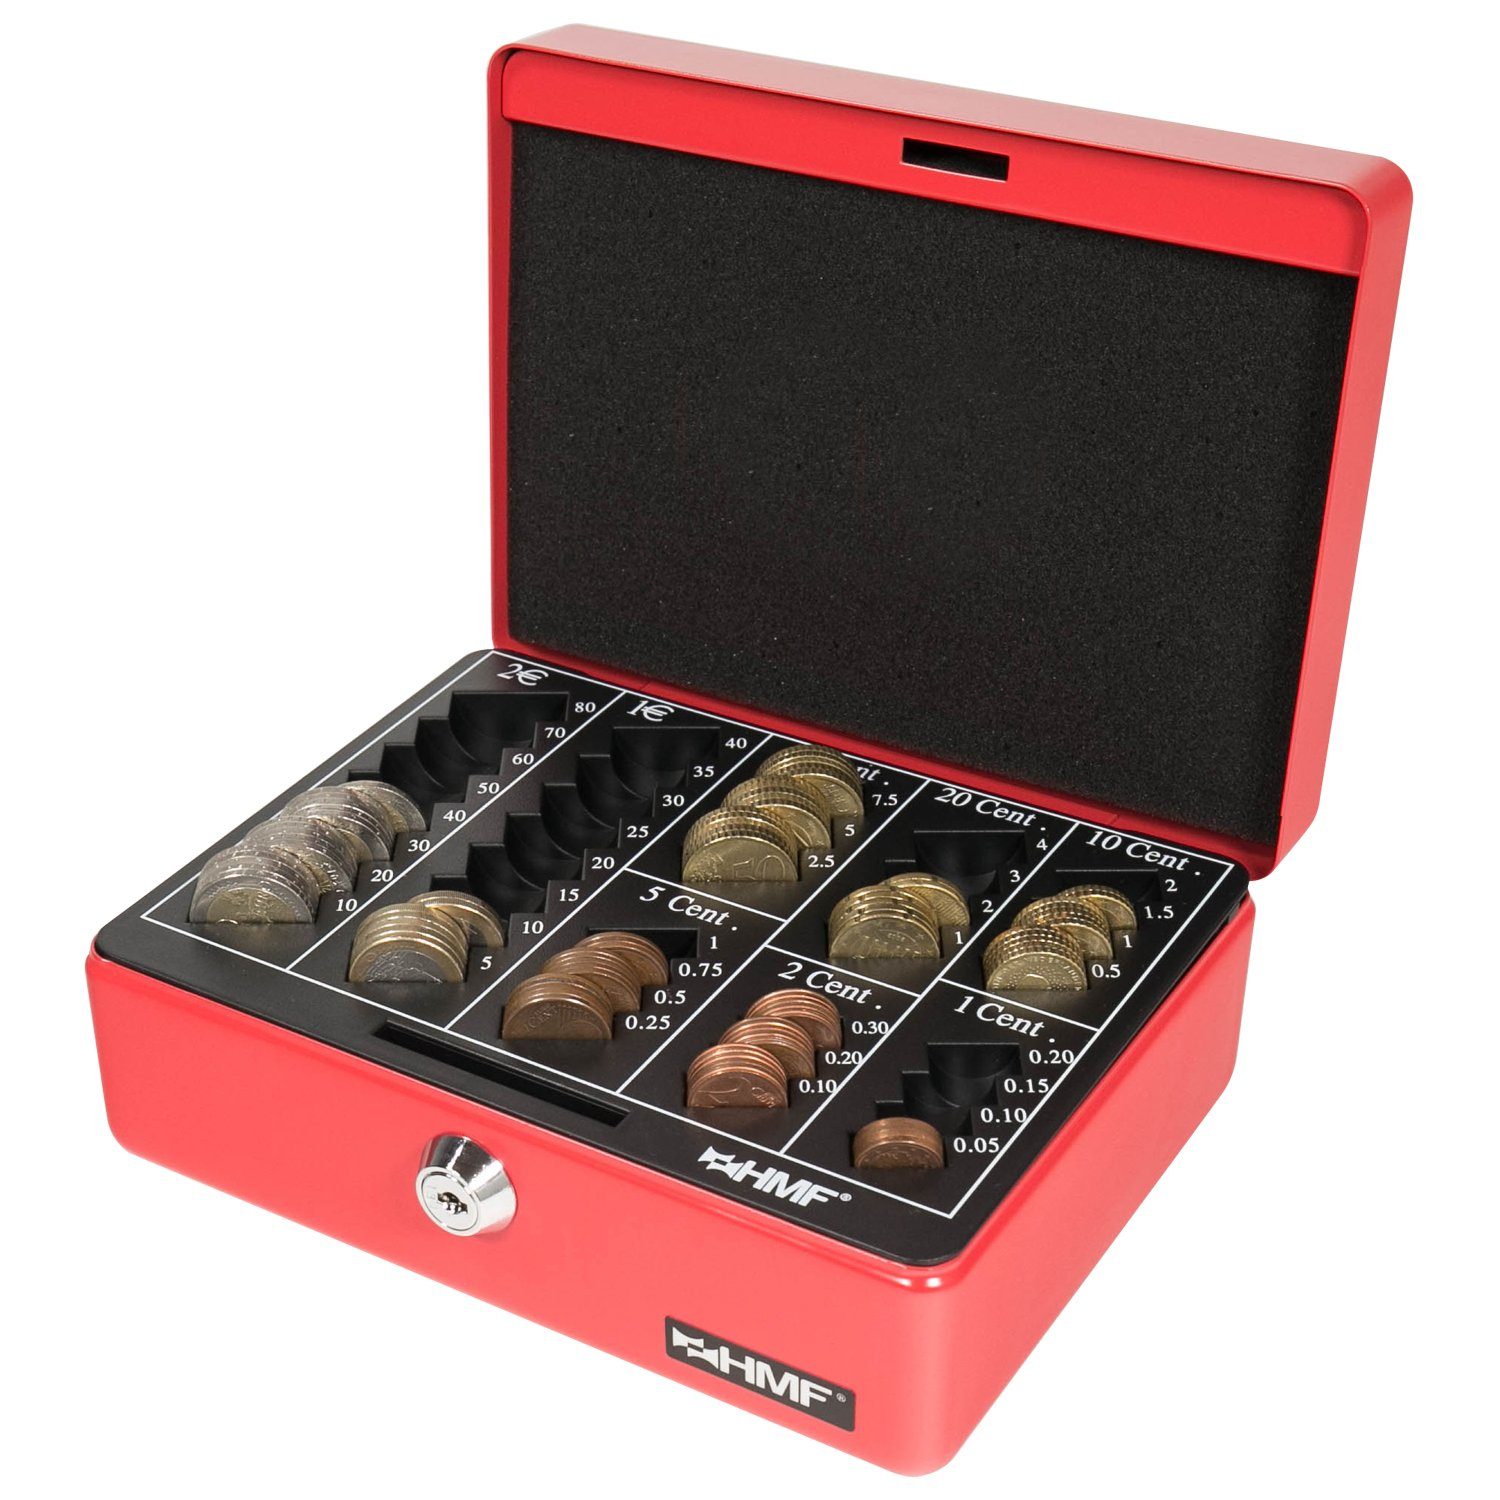 Geldbox rot Geldkassette mit Schlüssel, robuste HMF Bargeldkasse mit Münzzählbrett, Abschließbare cm 20x16x9